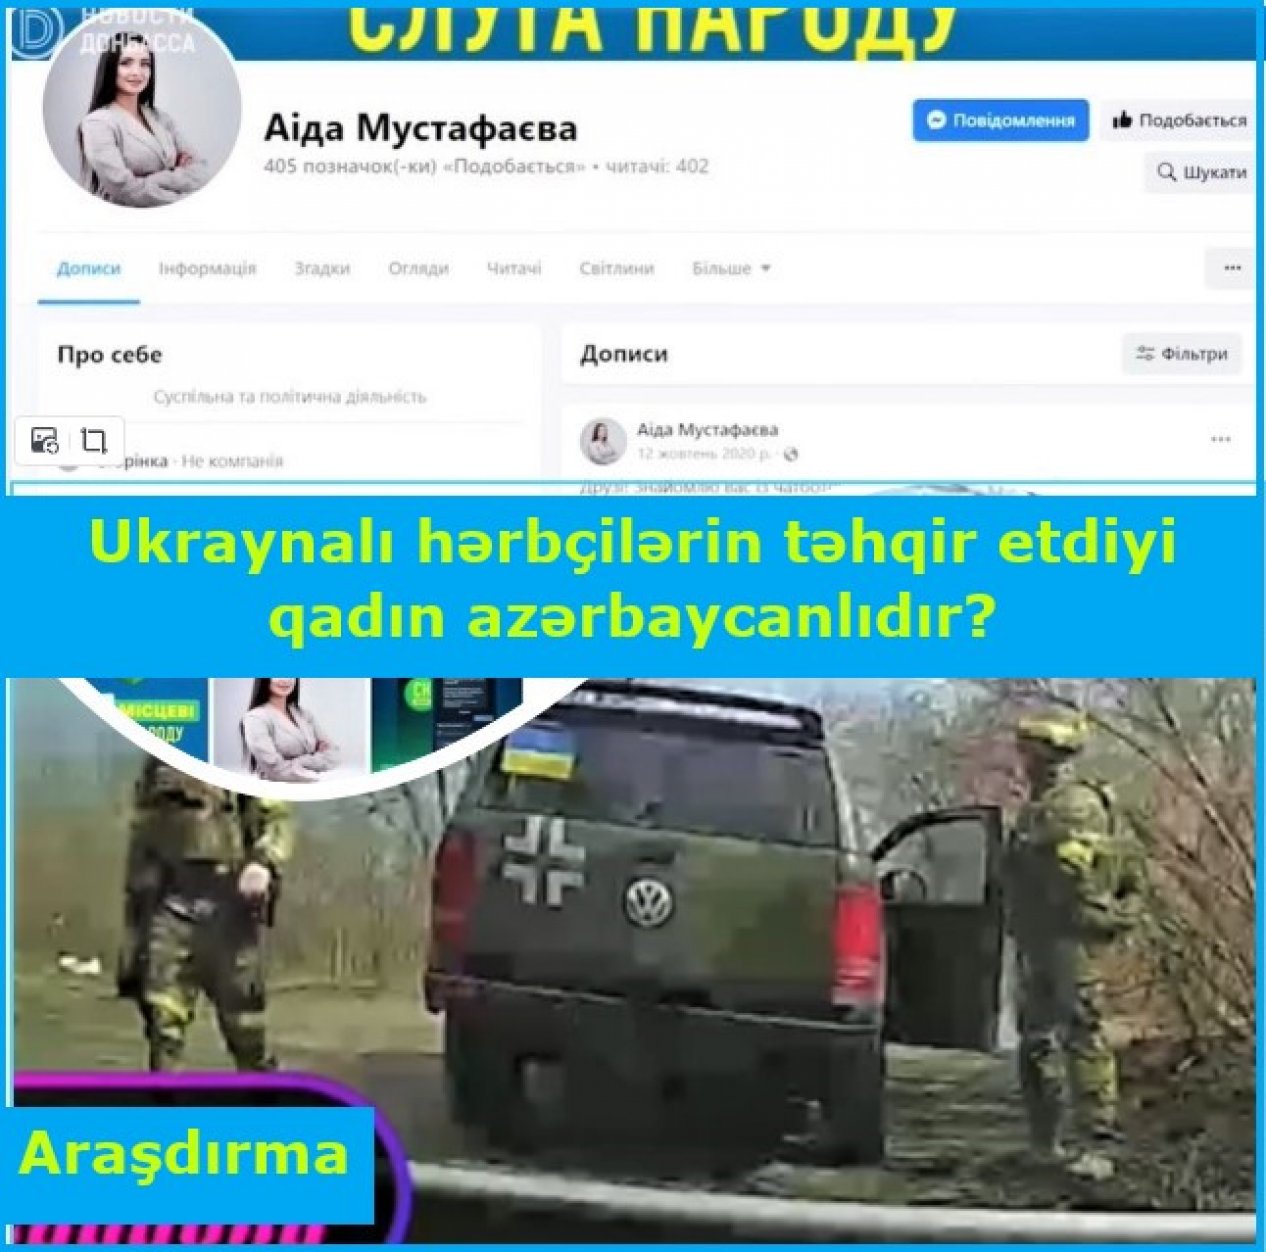 Ukraynalı hərbçilərin təhqir etdiyi azərbaycanlı qadının videosunu araşdırdıq